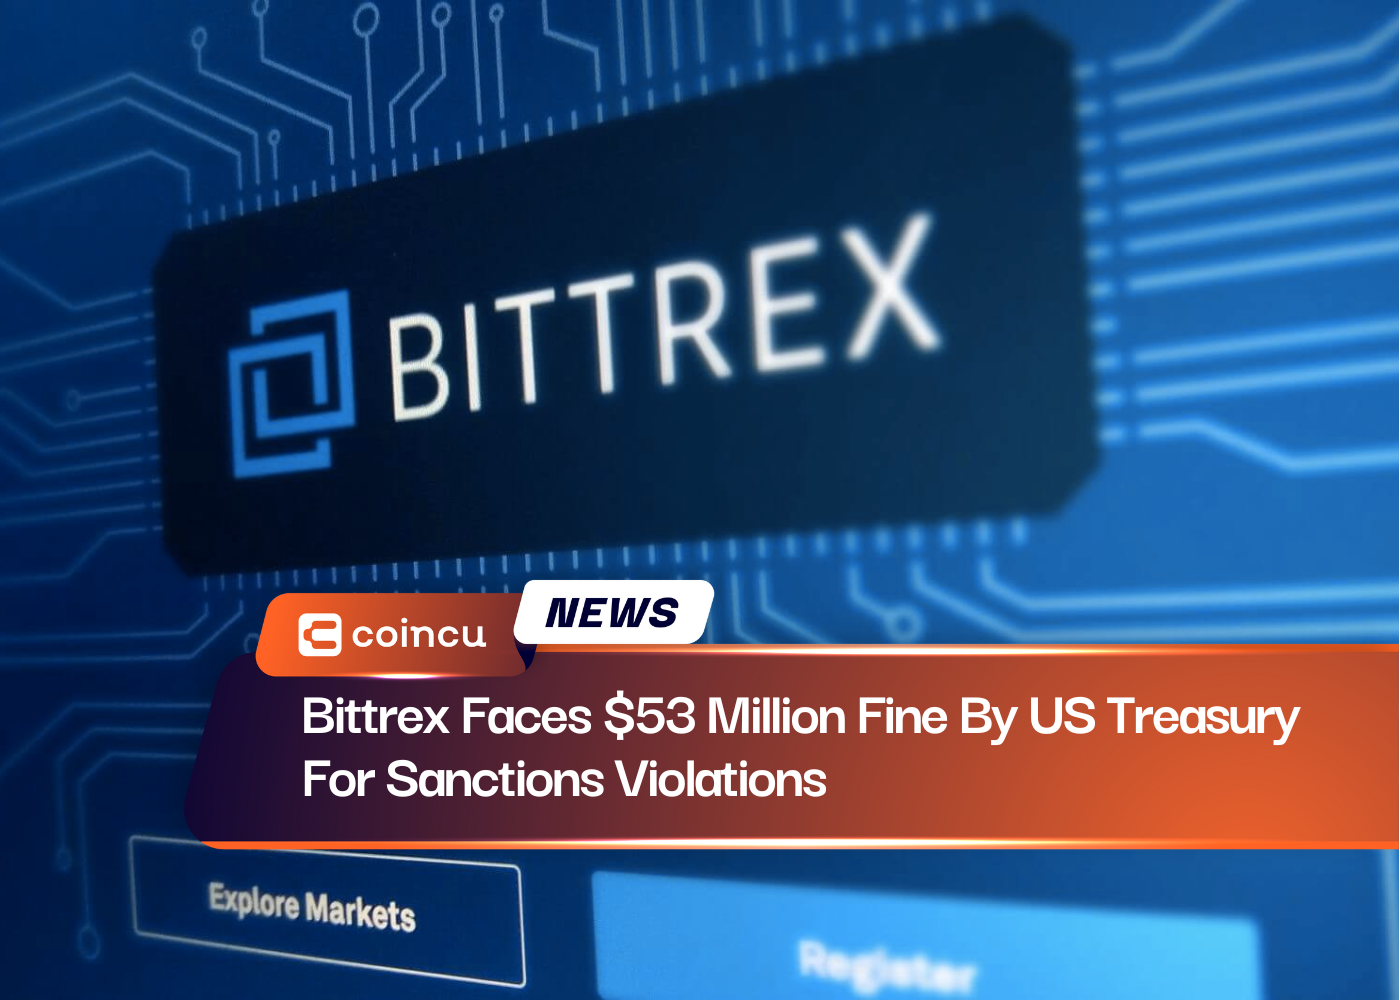 Bittrex enfrenta una multa de 53 millones de dólares del Tesoro de EE. UU. por violaciones de sanciones